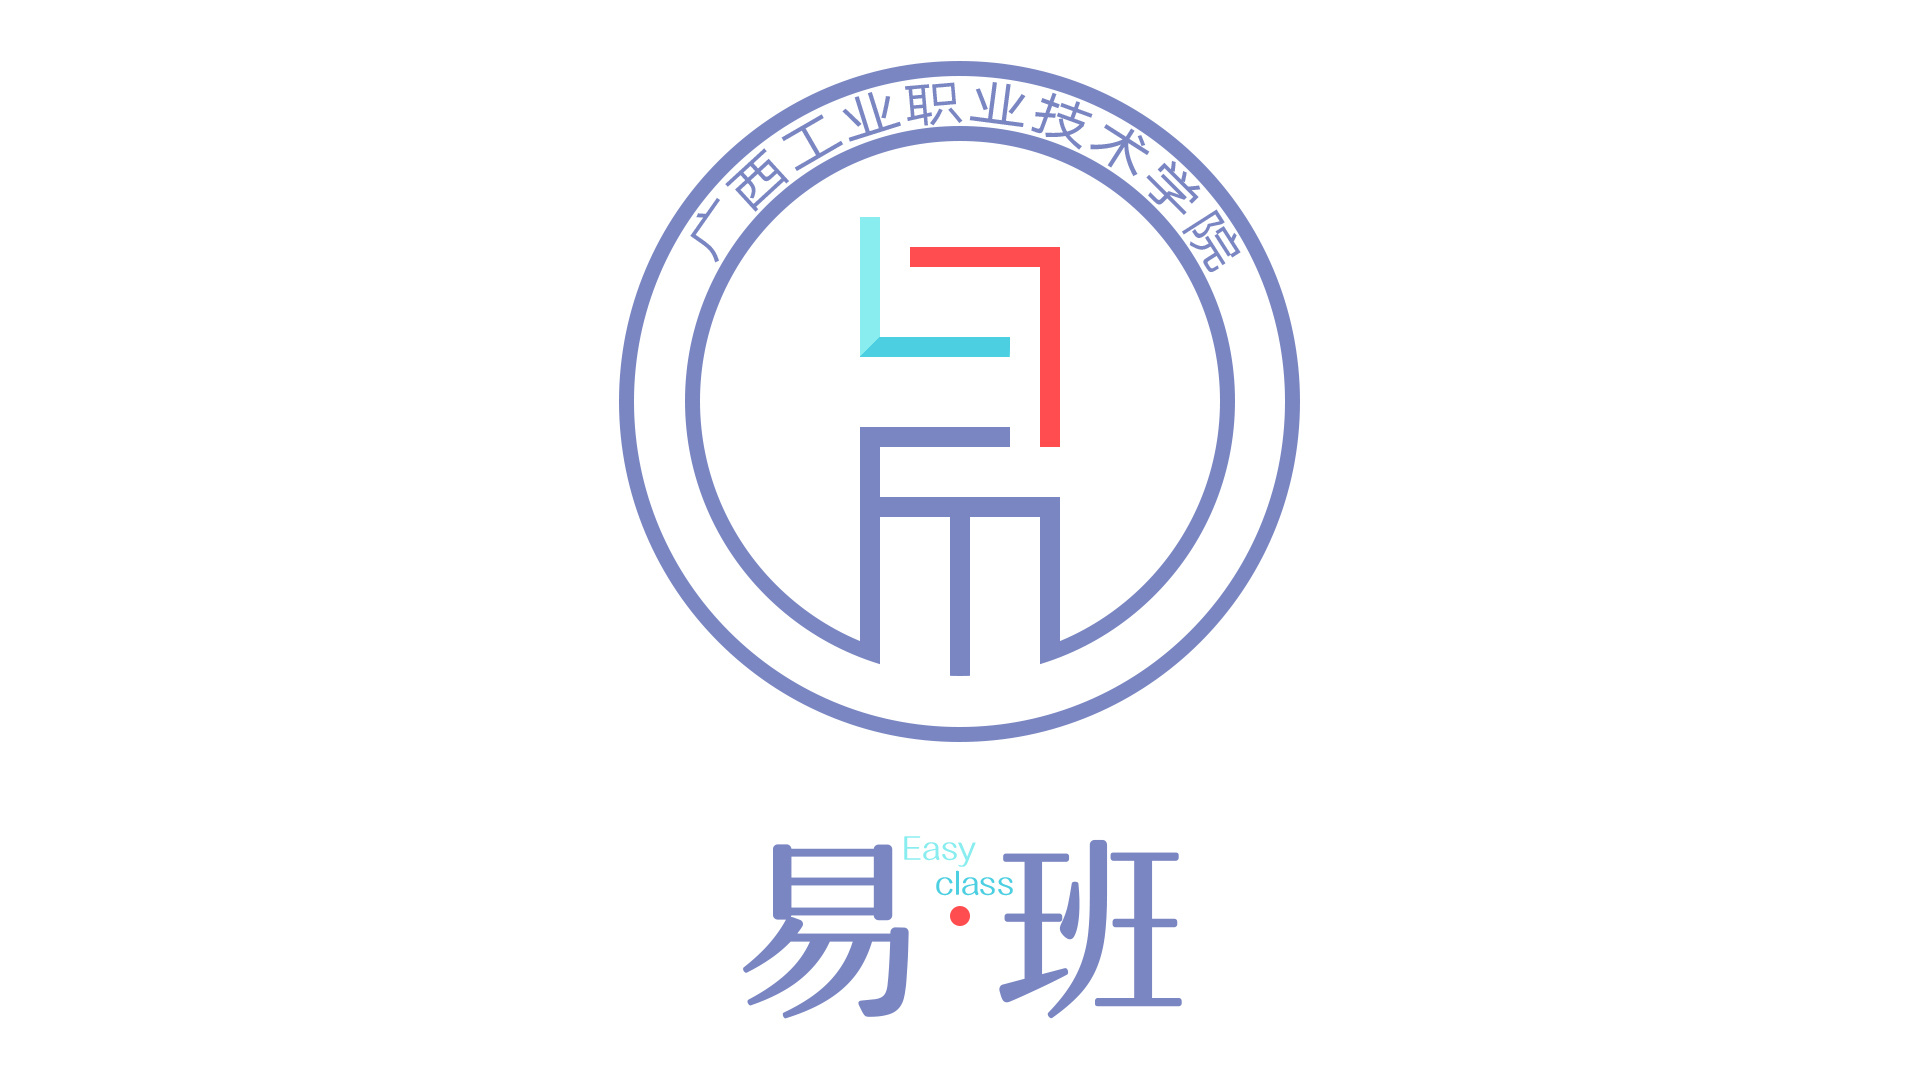 广西工业职业技术学院易班logo设计投稿